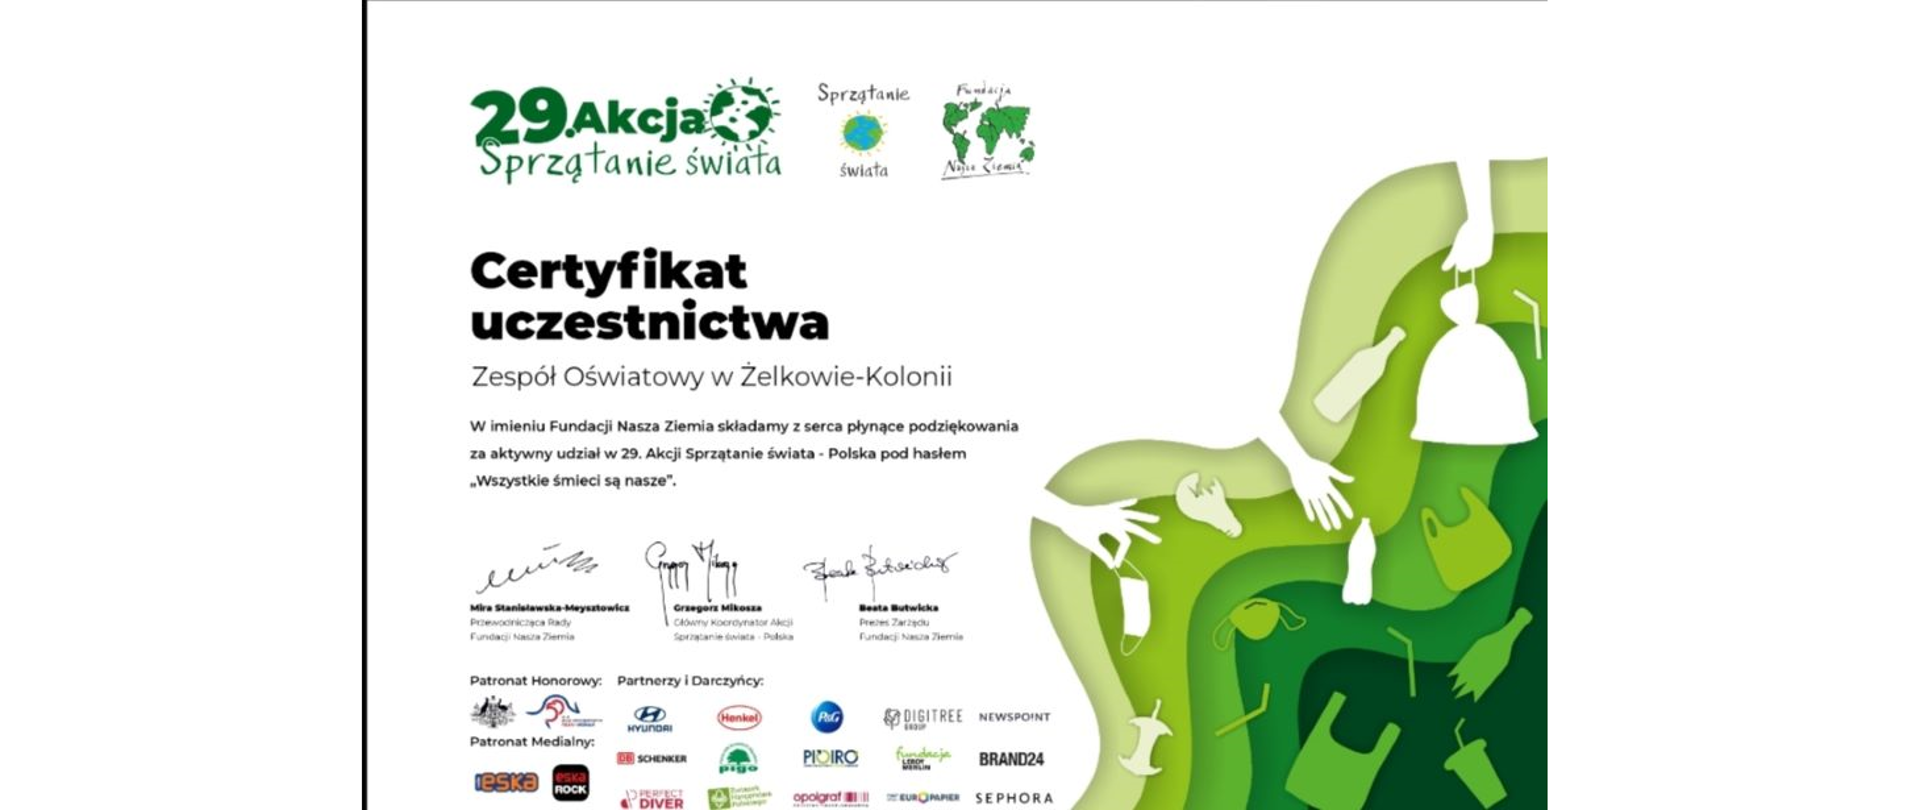 Akcja Sprzątanie Świata -Polska